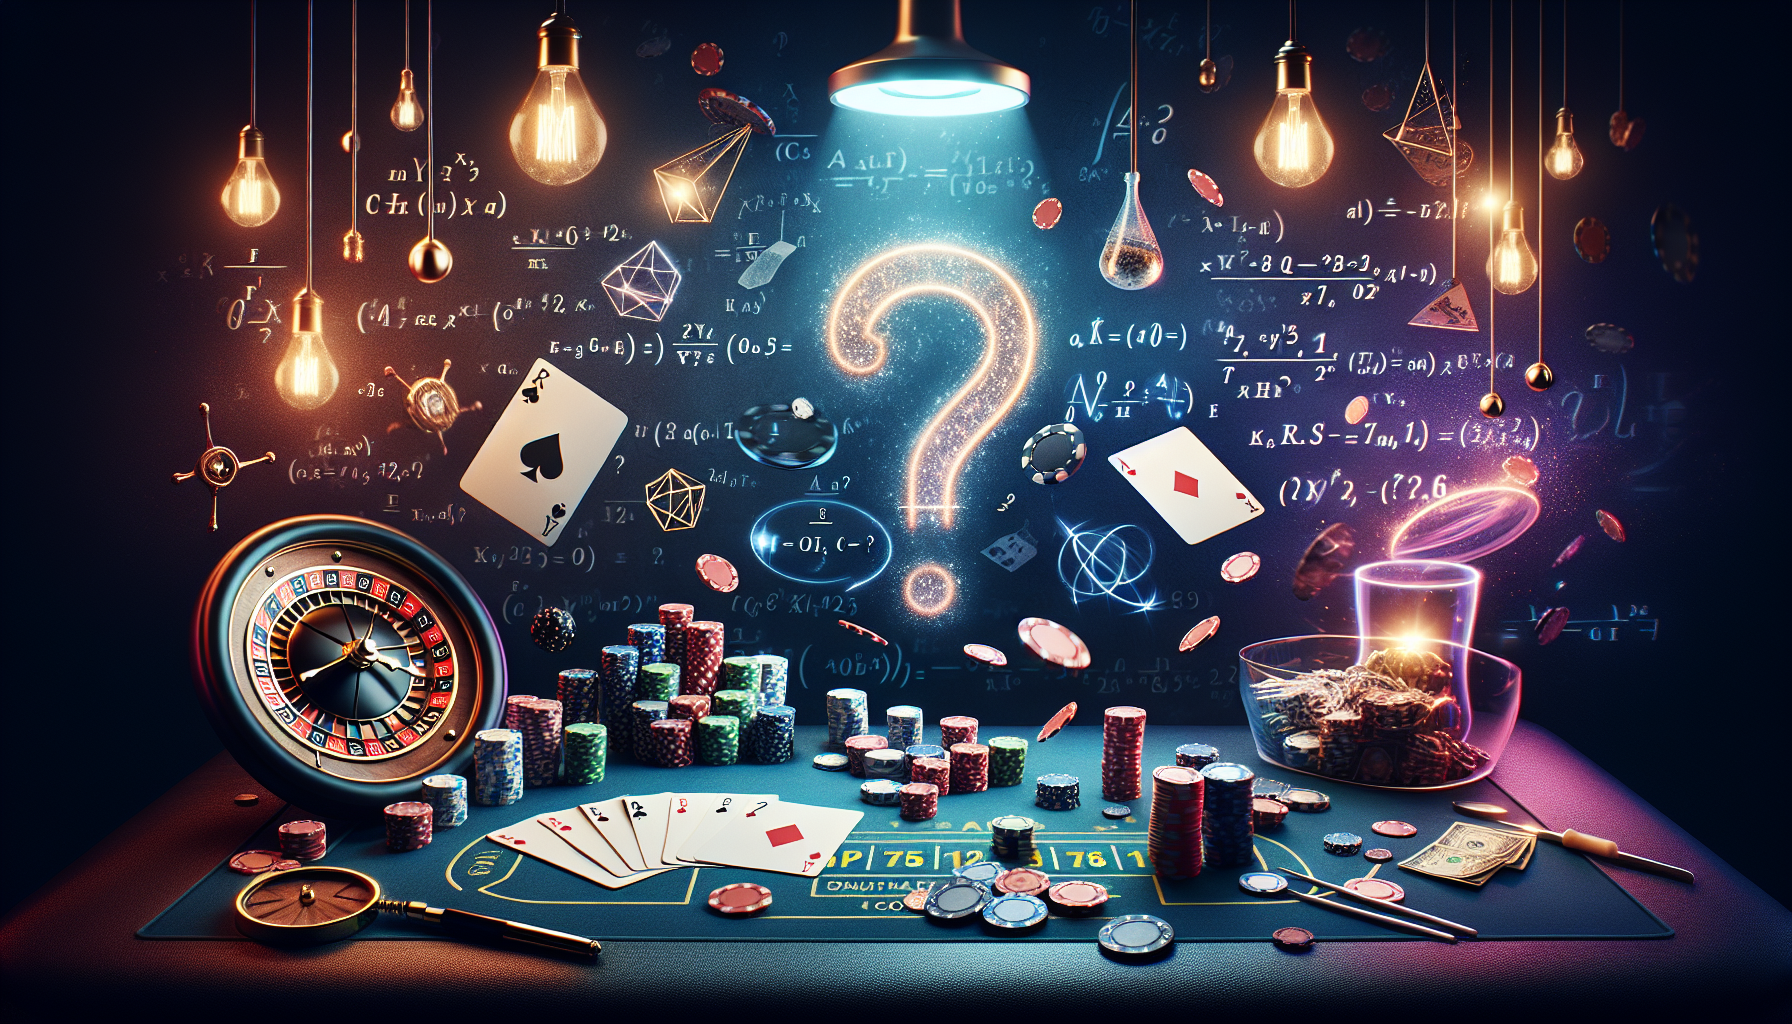 découvrez le monde du poker et explorez les concepts de probabilité dans ce jeu passionnant de cartes. apprenez à maîtriser les calculs de probabilité et à améliorer vos compétences en poker.